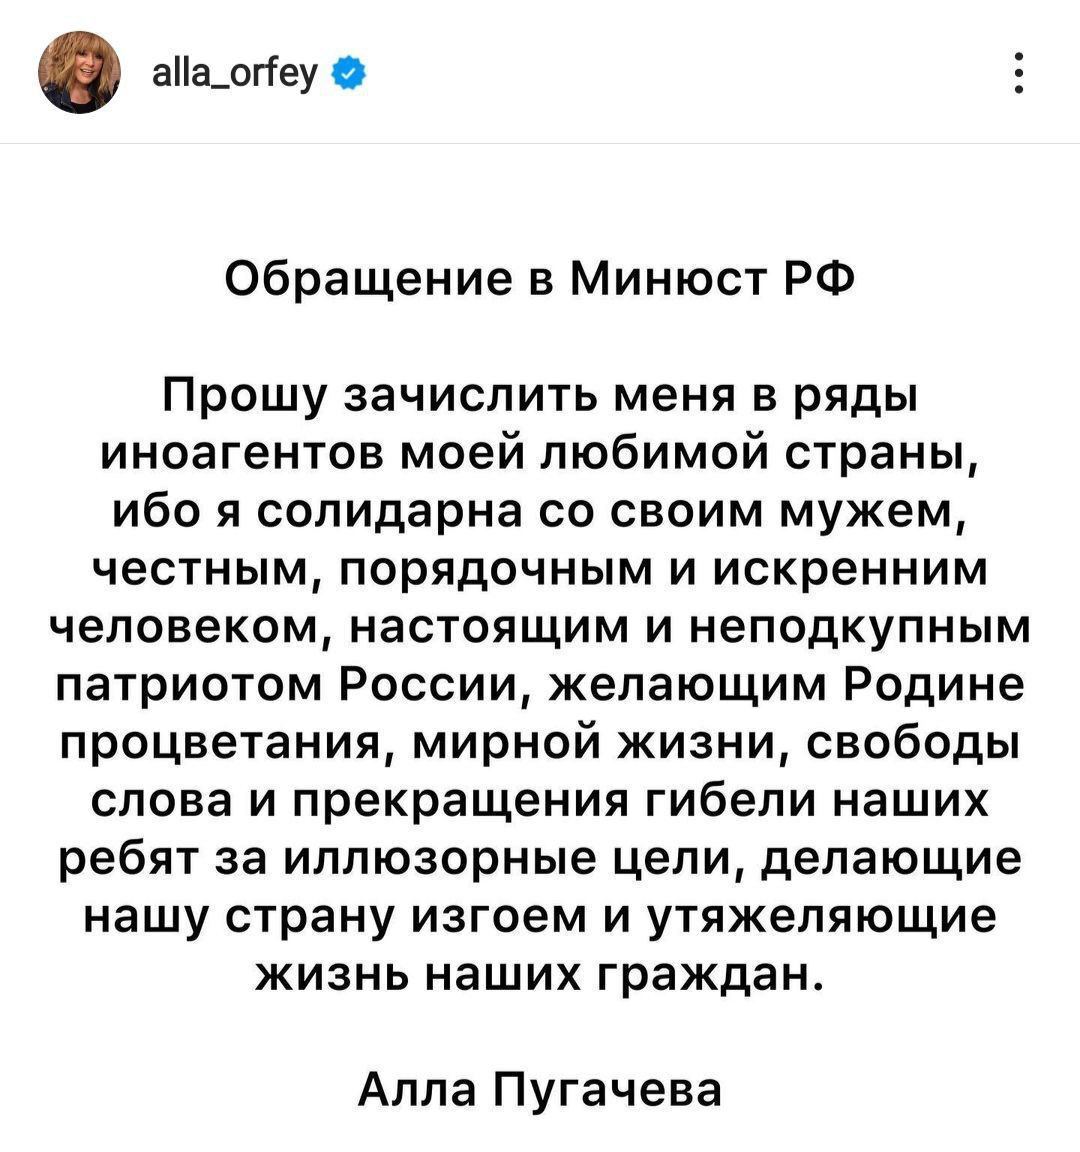 Алла Пугачева попросила включить ее в список "иноагентов" РФ: я солидарна со своим мужем